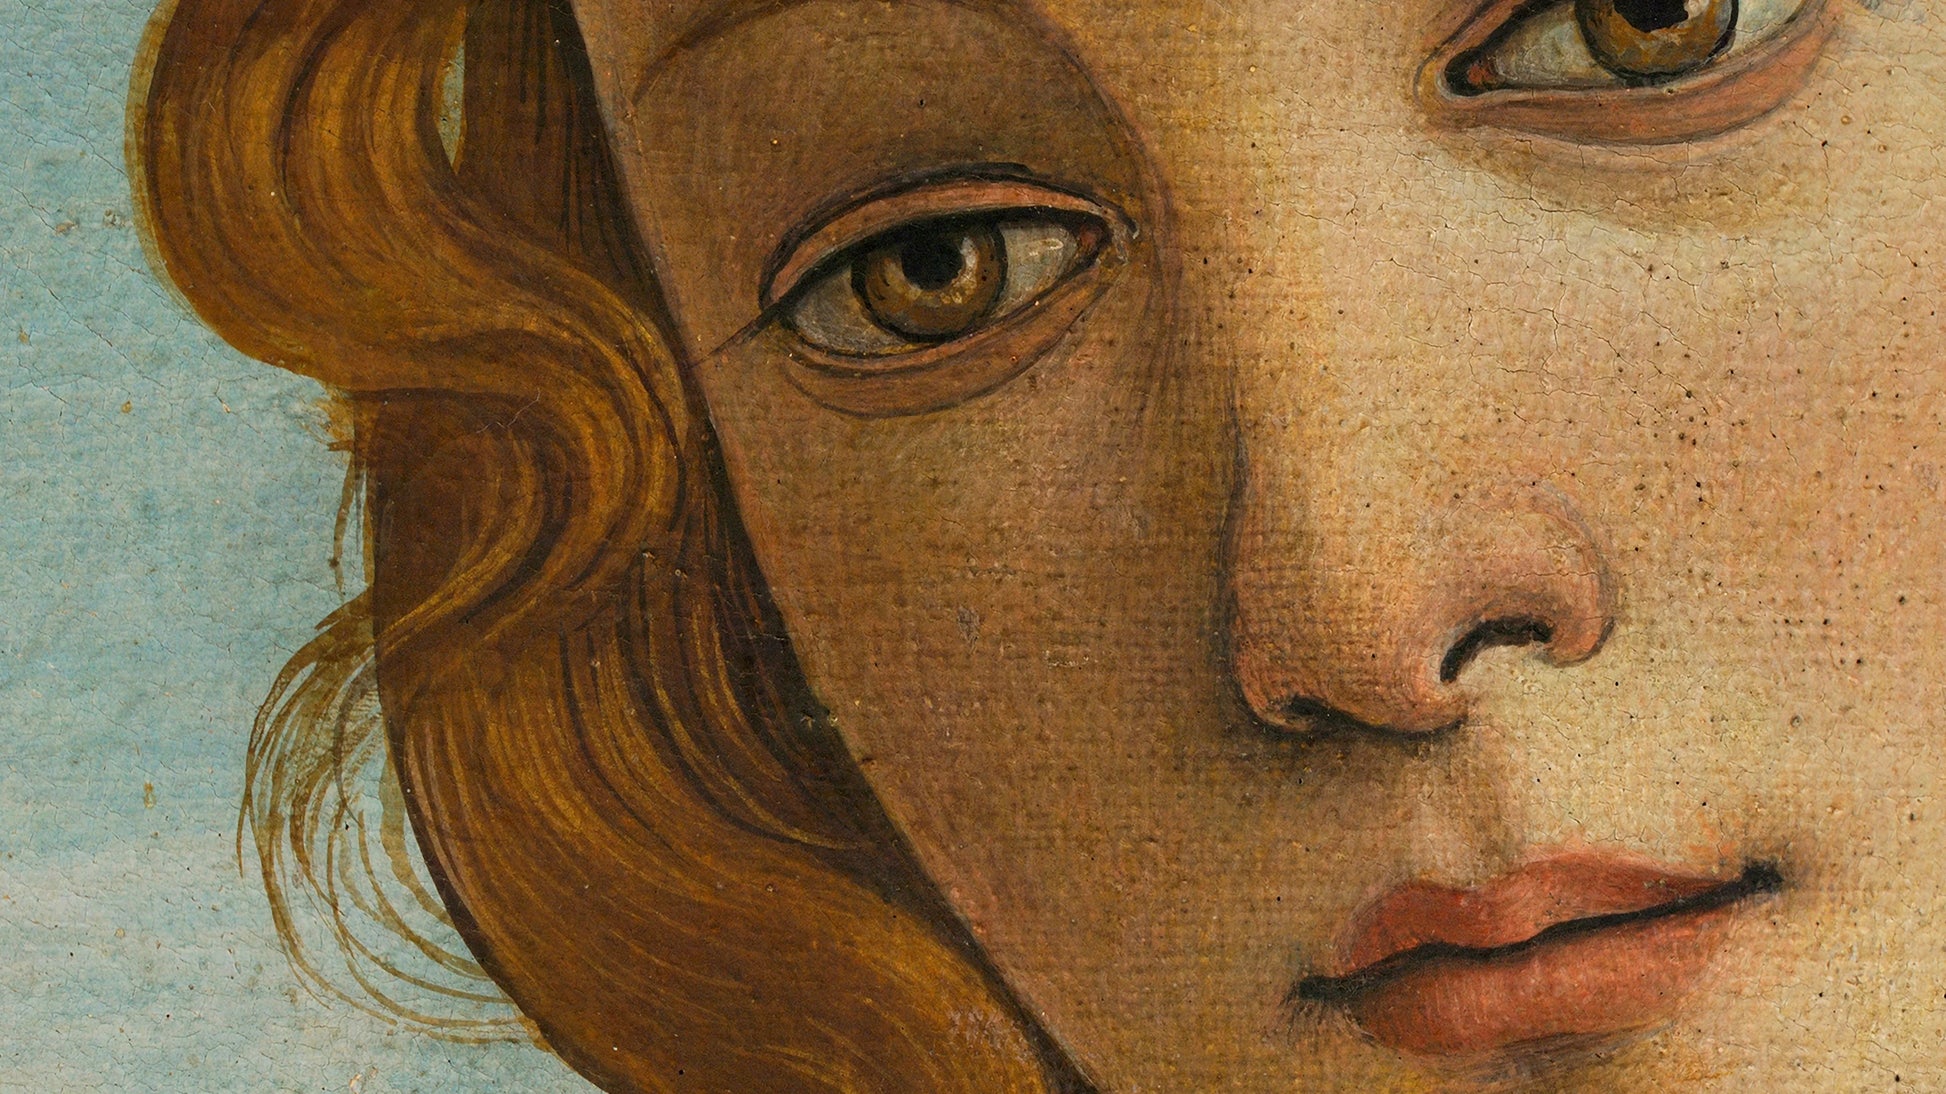 Zbliżenie na twarz anioła z reprodukcji 'Narodzin Wenus' Sandro Botticellego, ukazujące szczegółowe rysy i subtelne odcienie skóry, odwzorowane dzięki technologii DECOMURA AI.